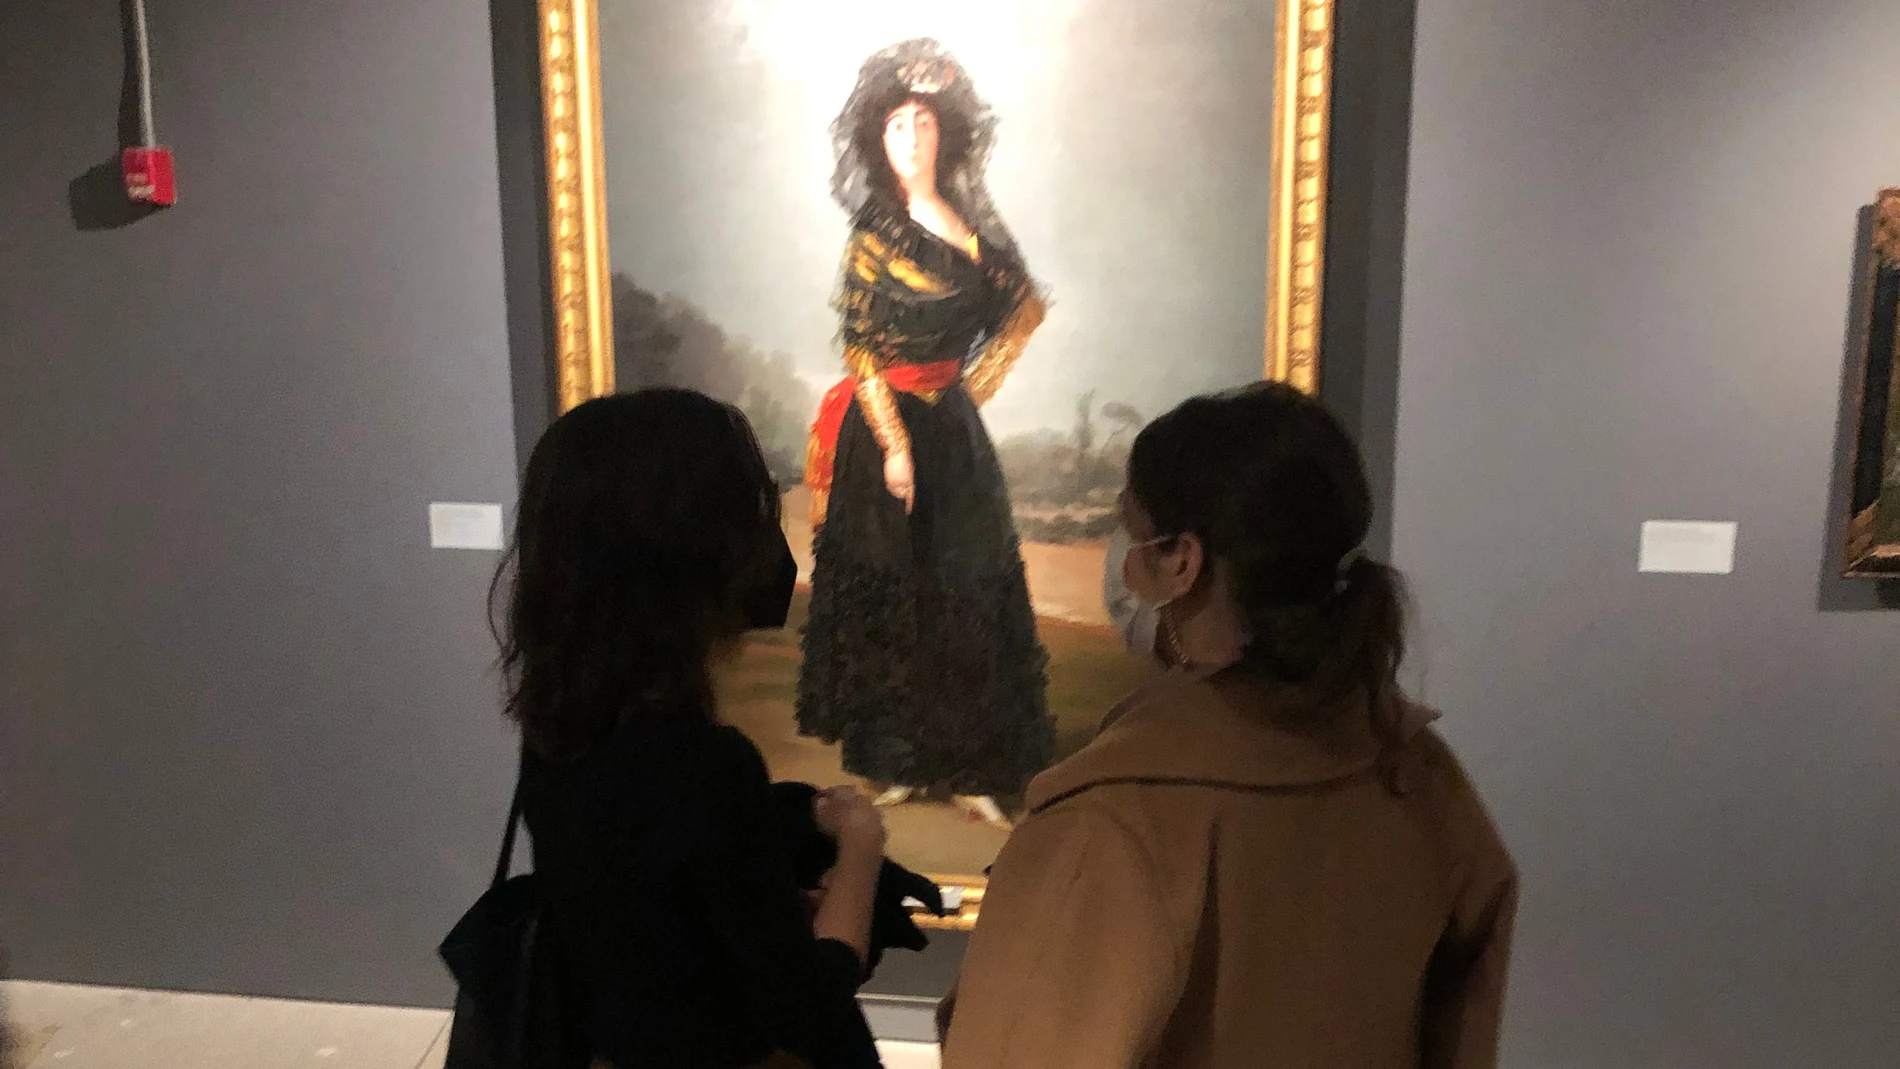 "La duquesa de Alba", de Francisco de Goya, se exhibe en la Hispanic Society de Nueva York